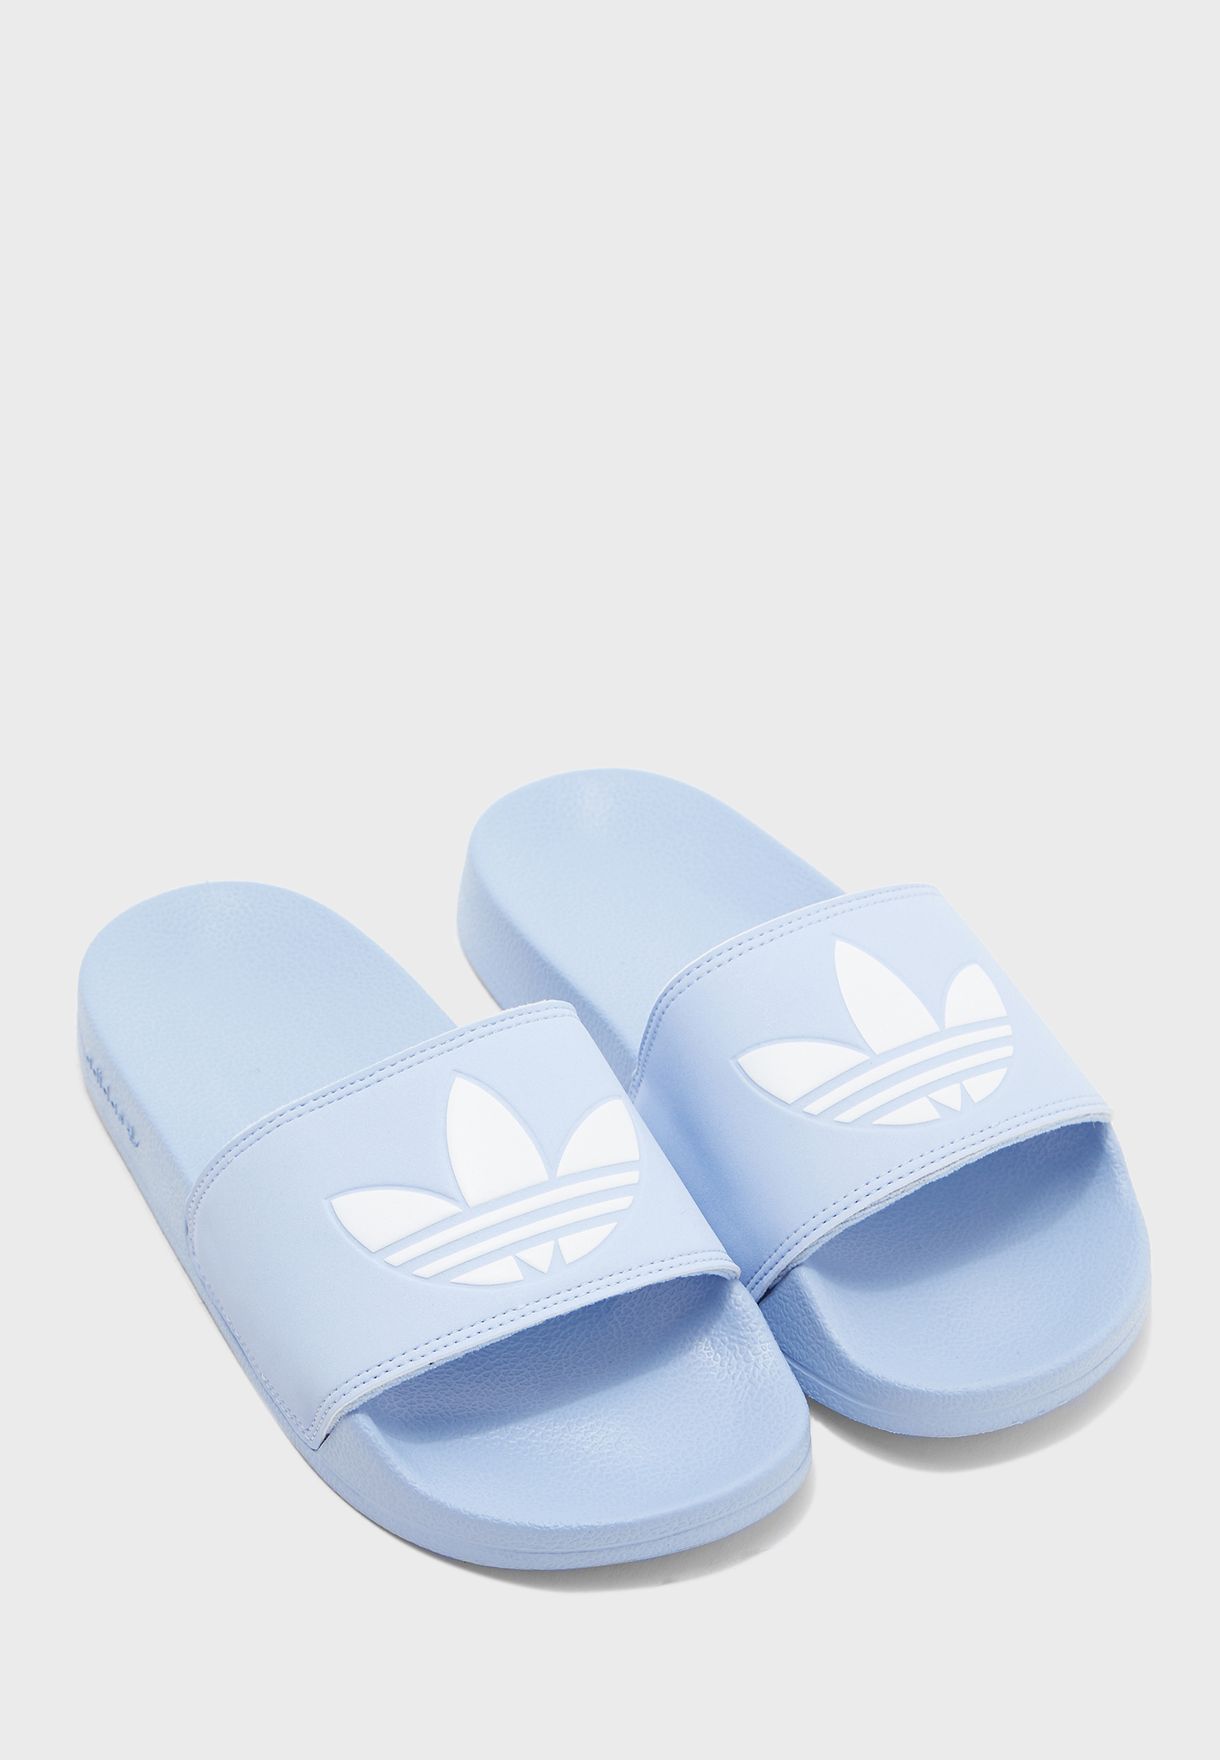 adidas adilette light blue